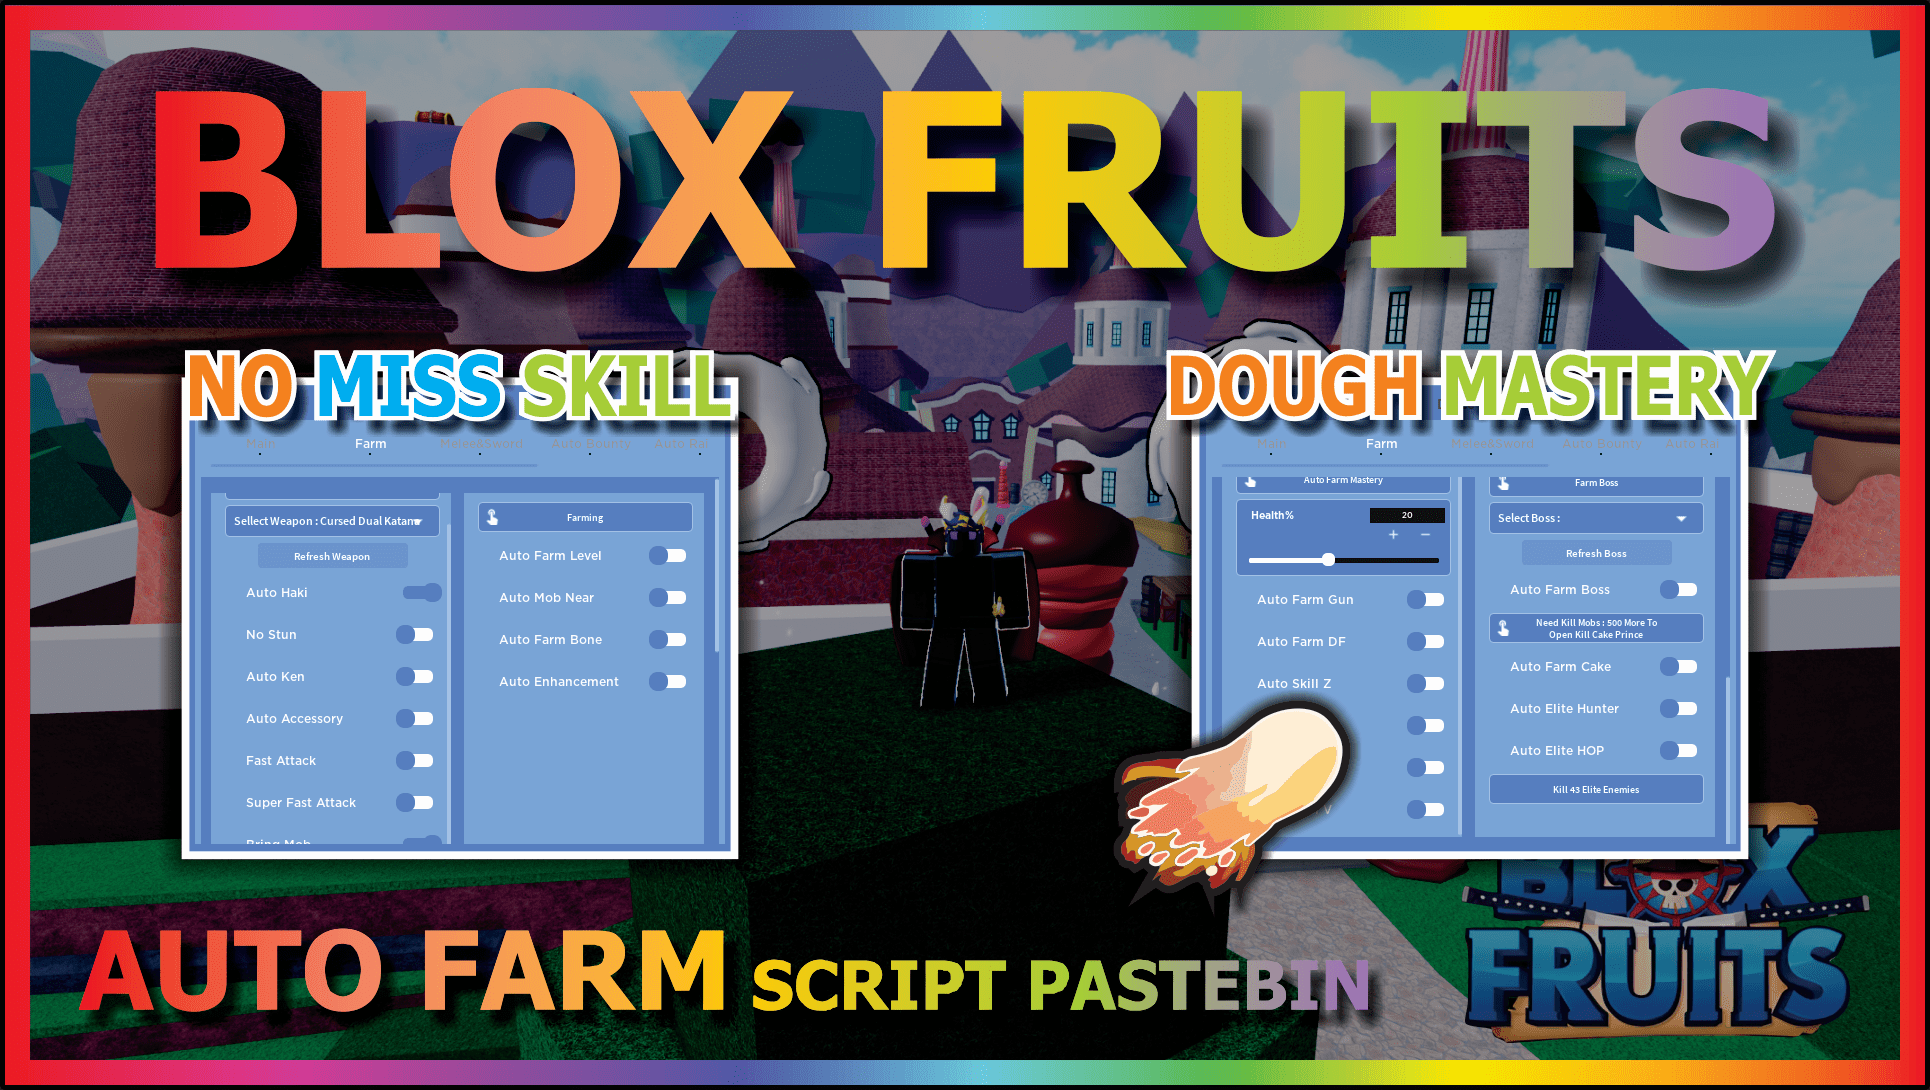 Contas, Giros E Frutas Blox Fruits - Roblox- Bloxfruits - DFG